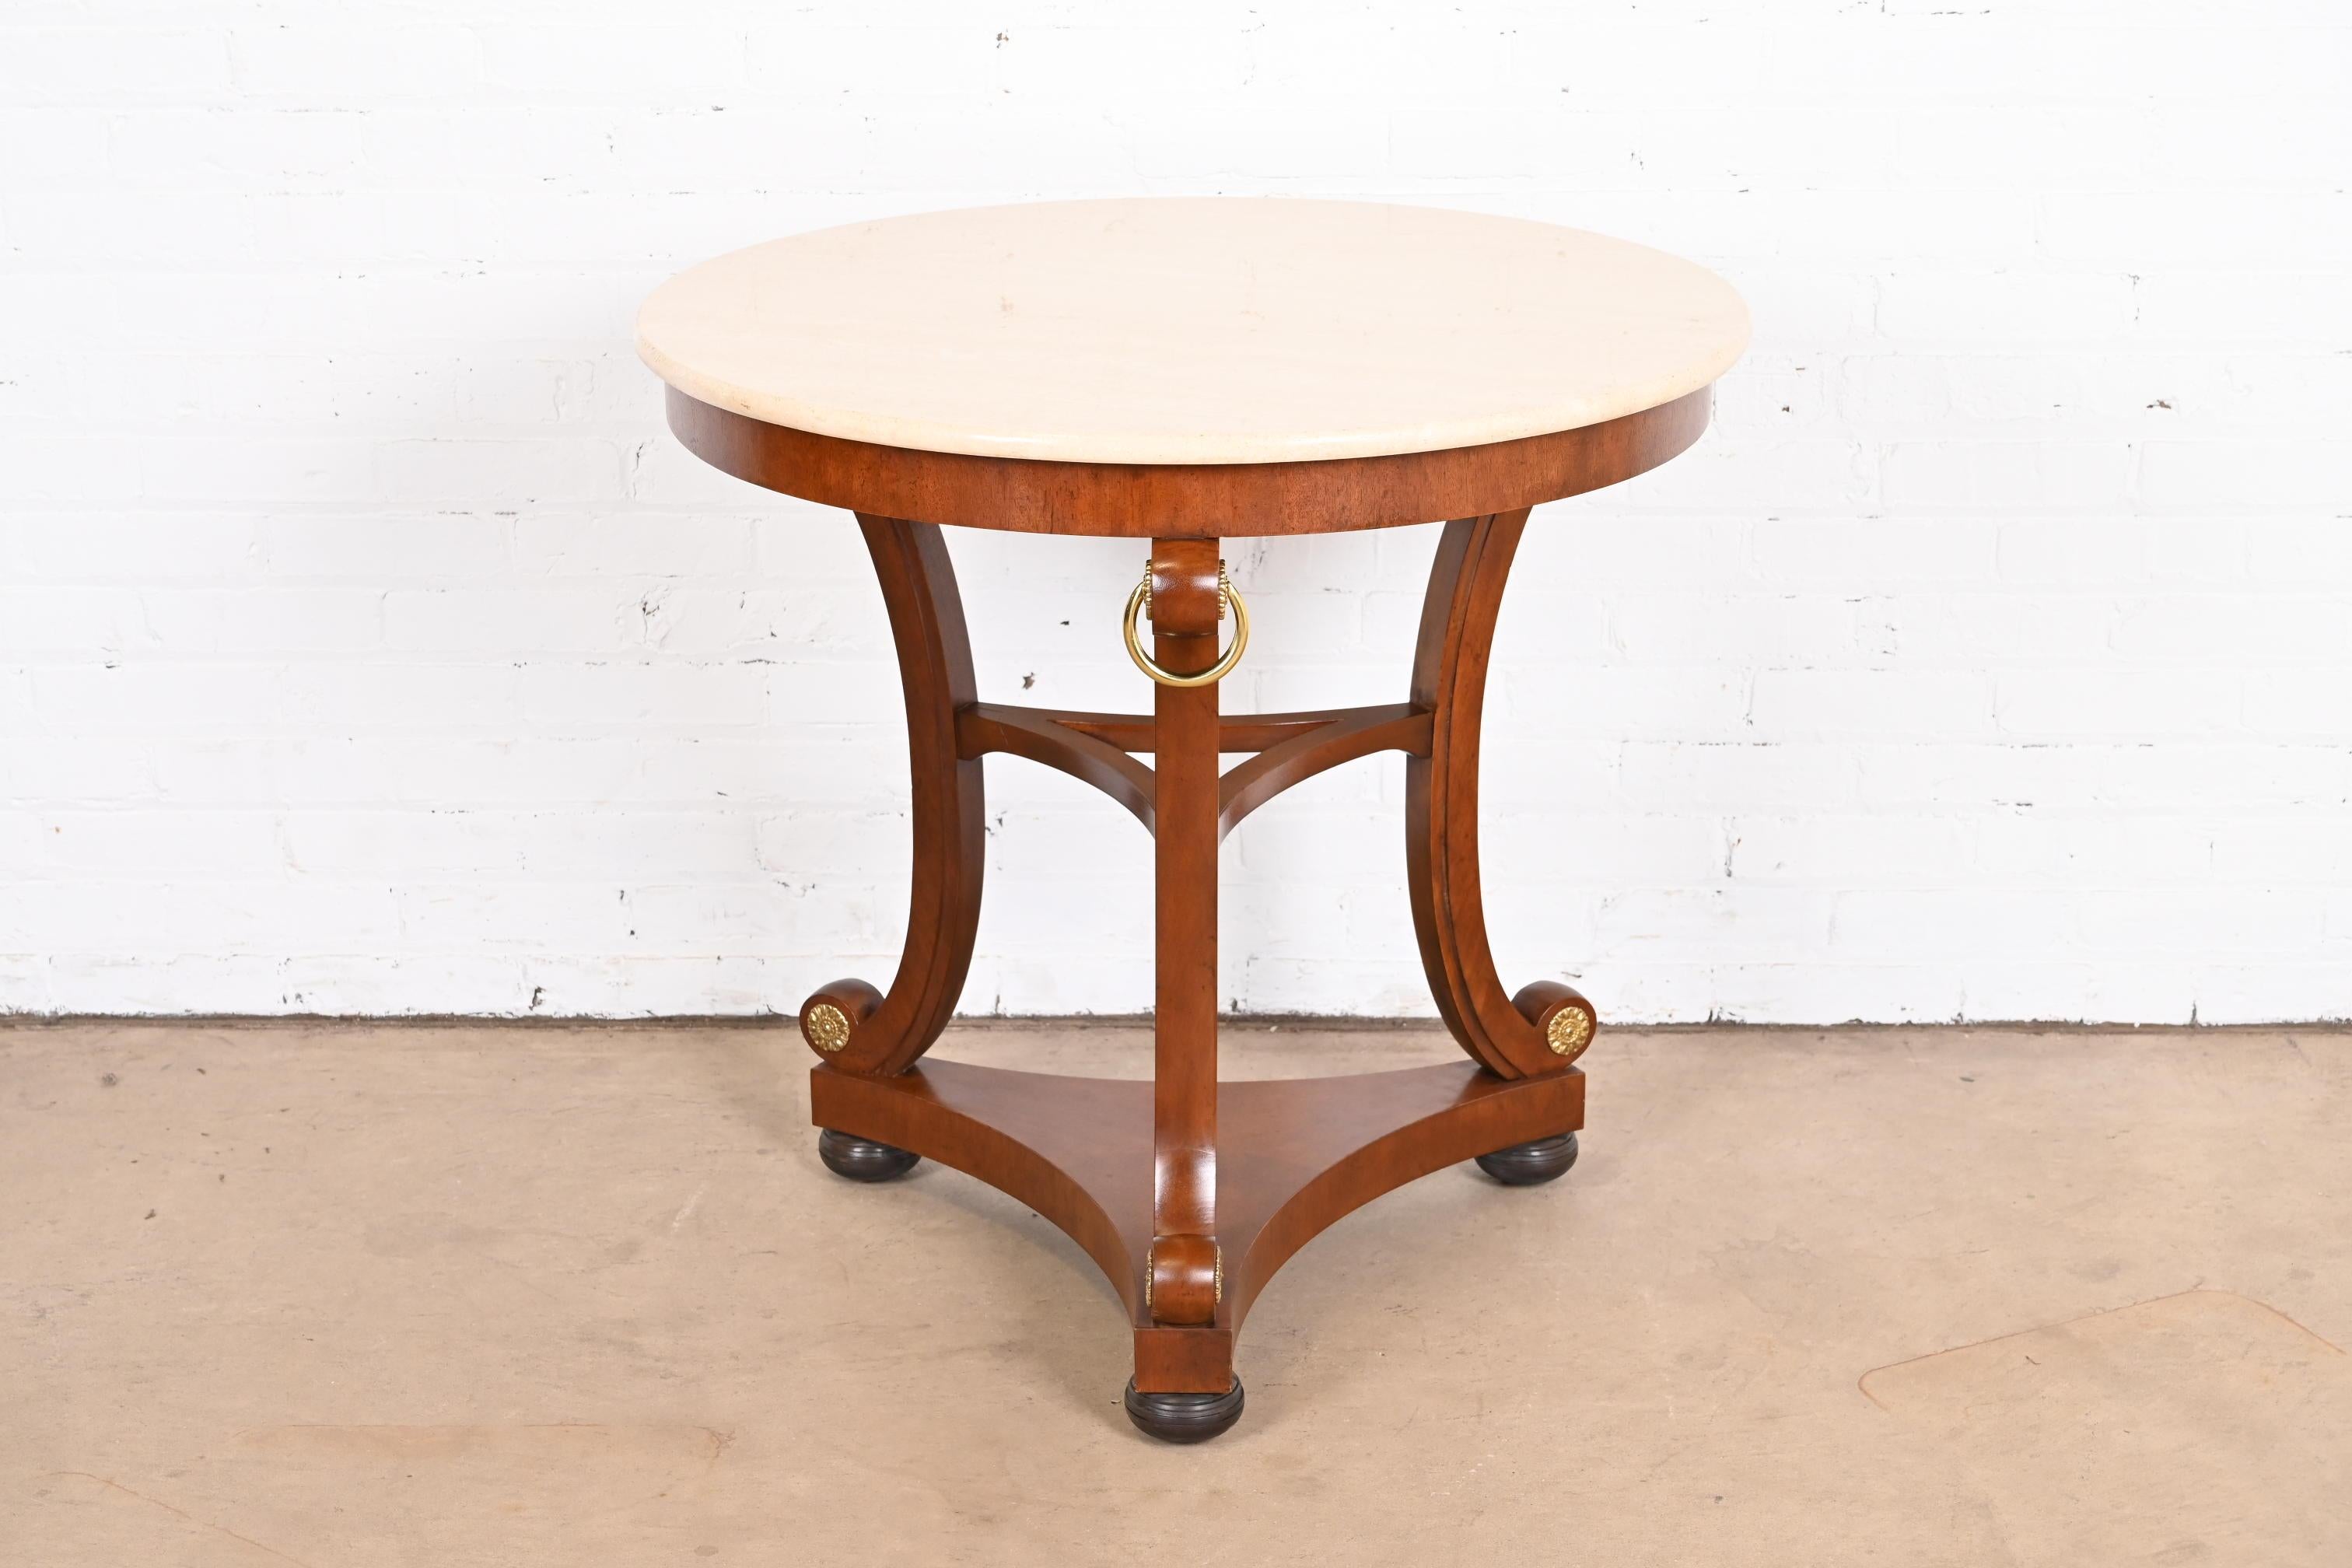 Ein außergewöhnlicher Teetisch oder Mitteltisch im Regency- oder Empire-Stil

Von Baker Furniture, 